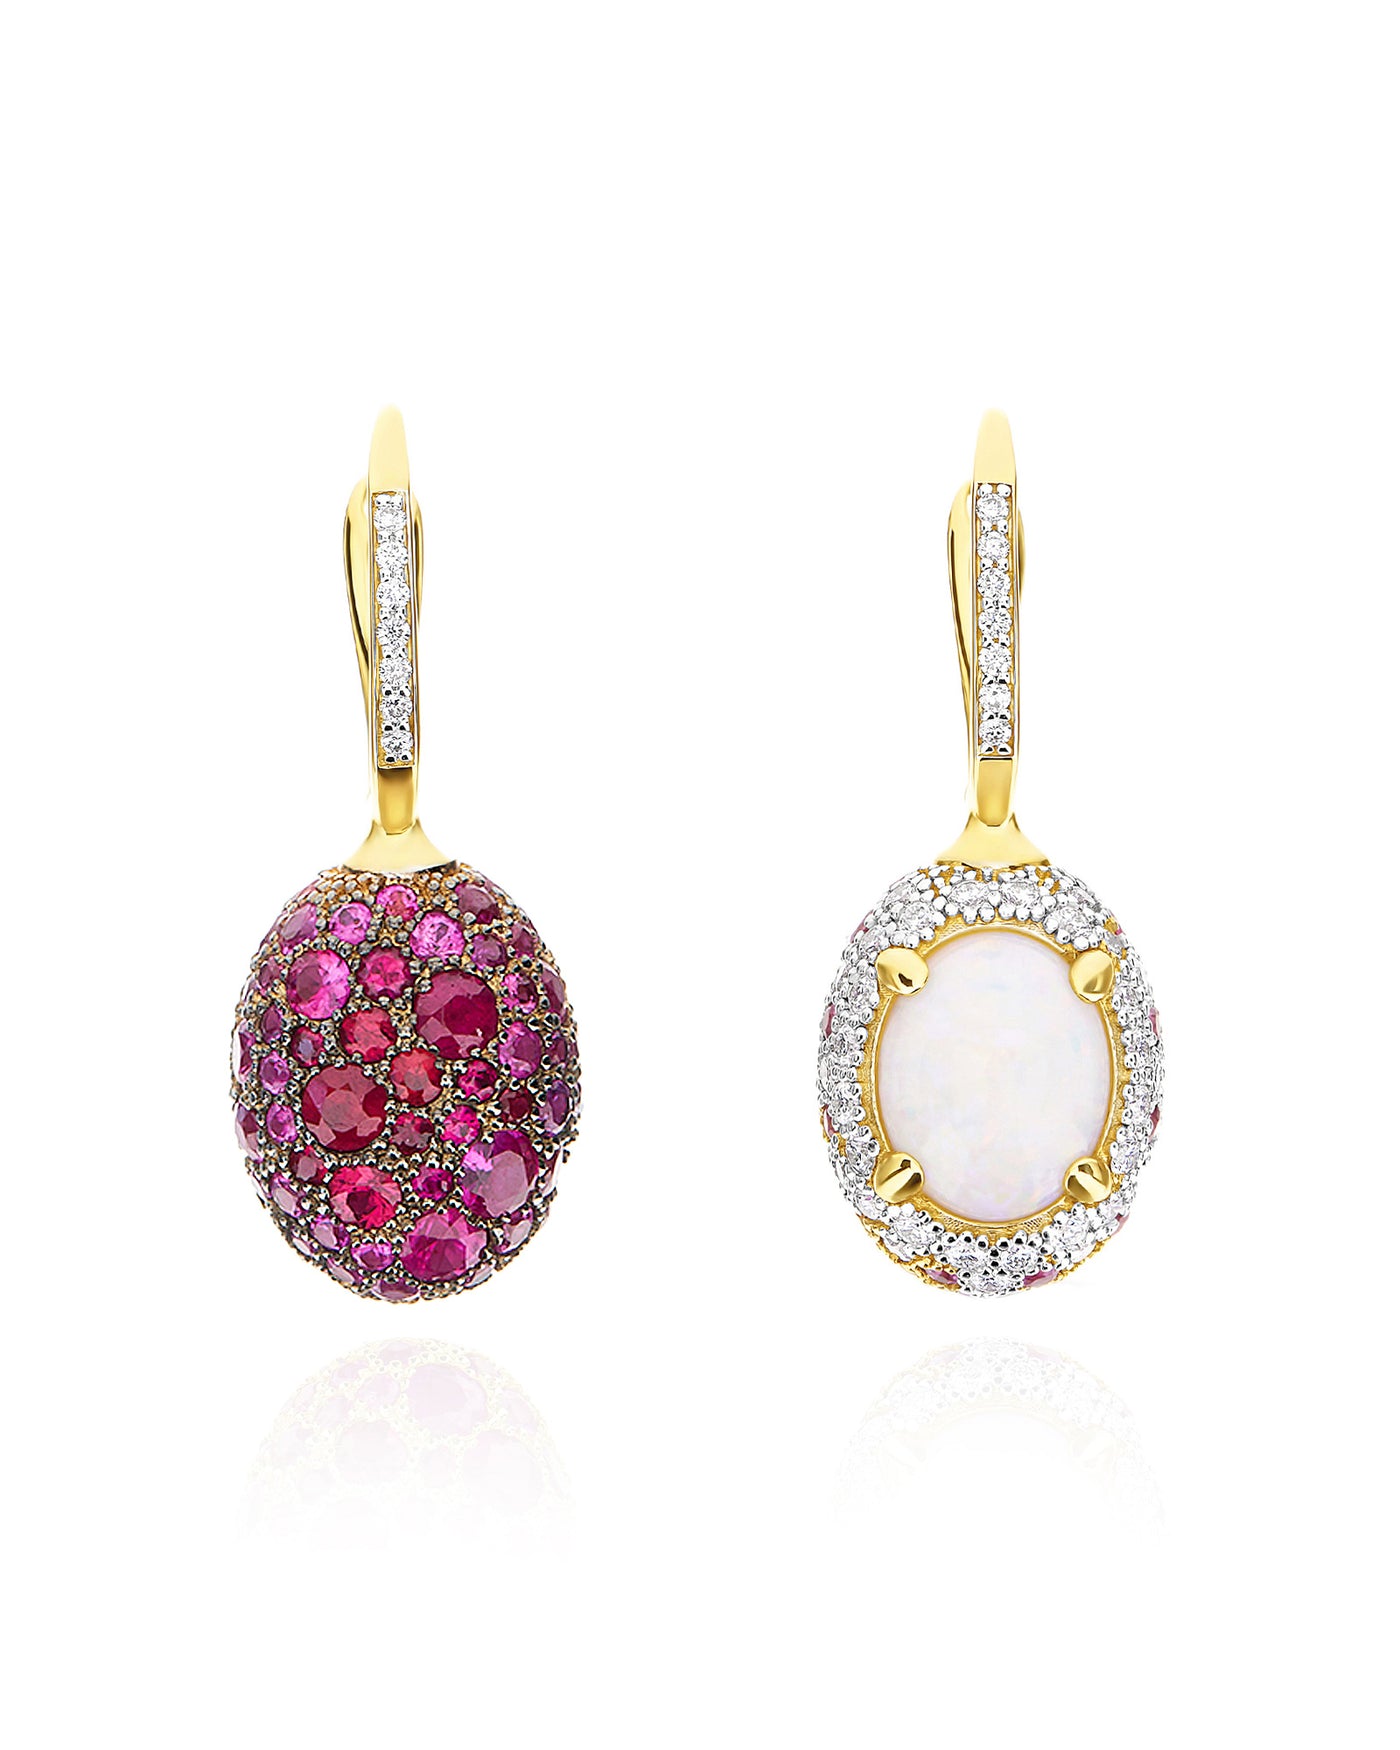 Orecchini CILIEGINE "DANCING REVERSE" double face in oro, zaffiri rosa, rubini, opale bianco Australiano e diamanti (medi)